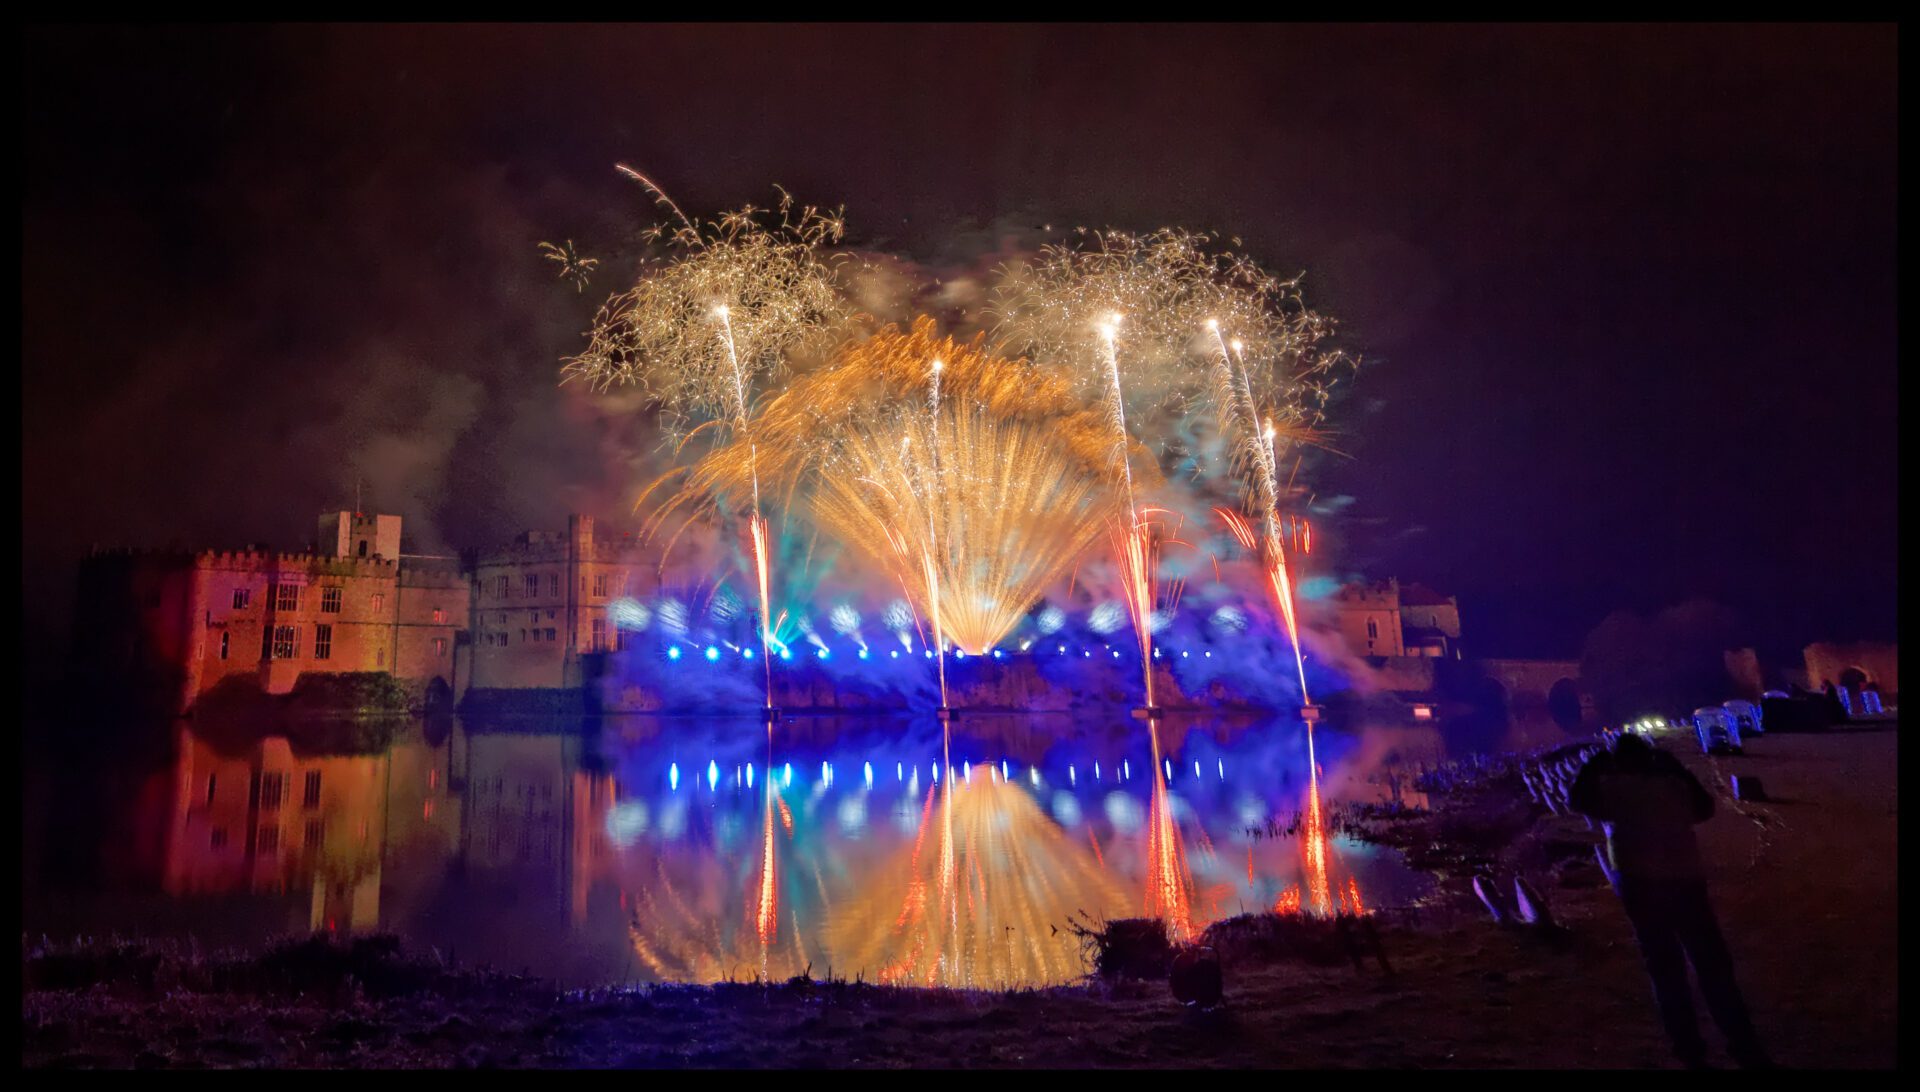 Leeds Castle Fireworks Spectacular, Kent